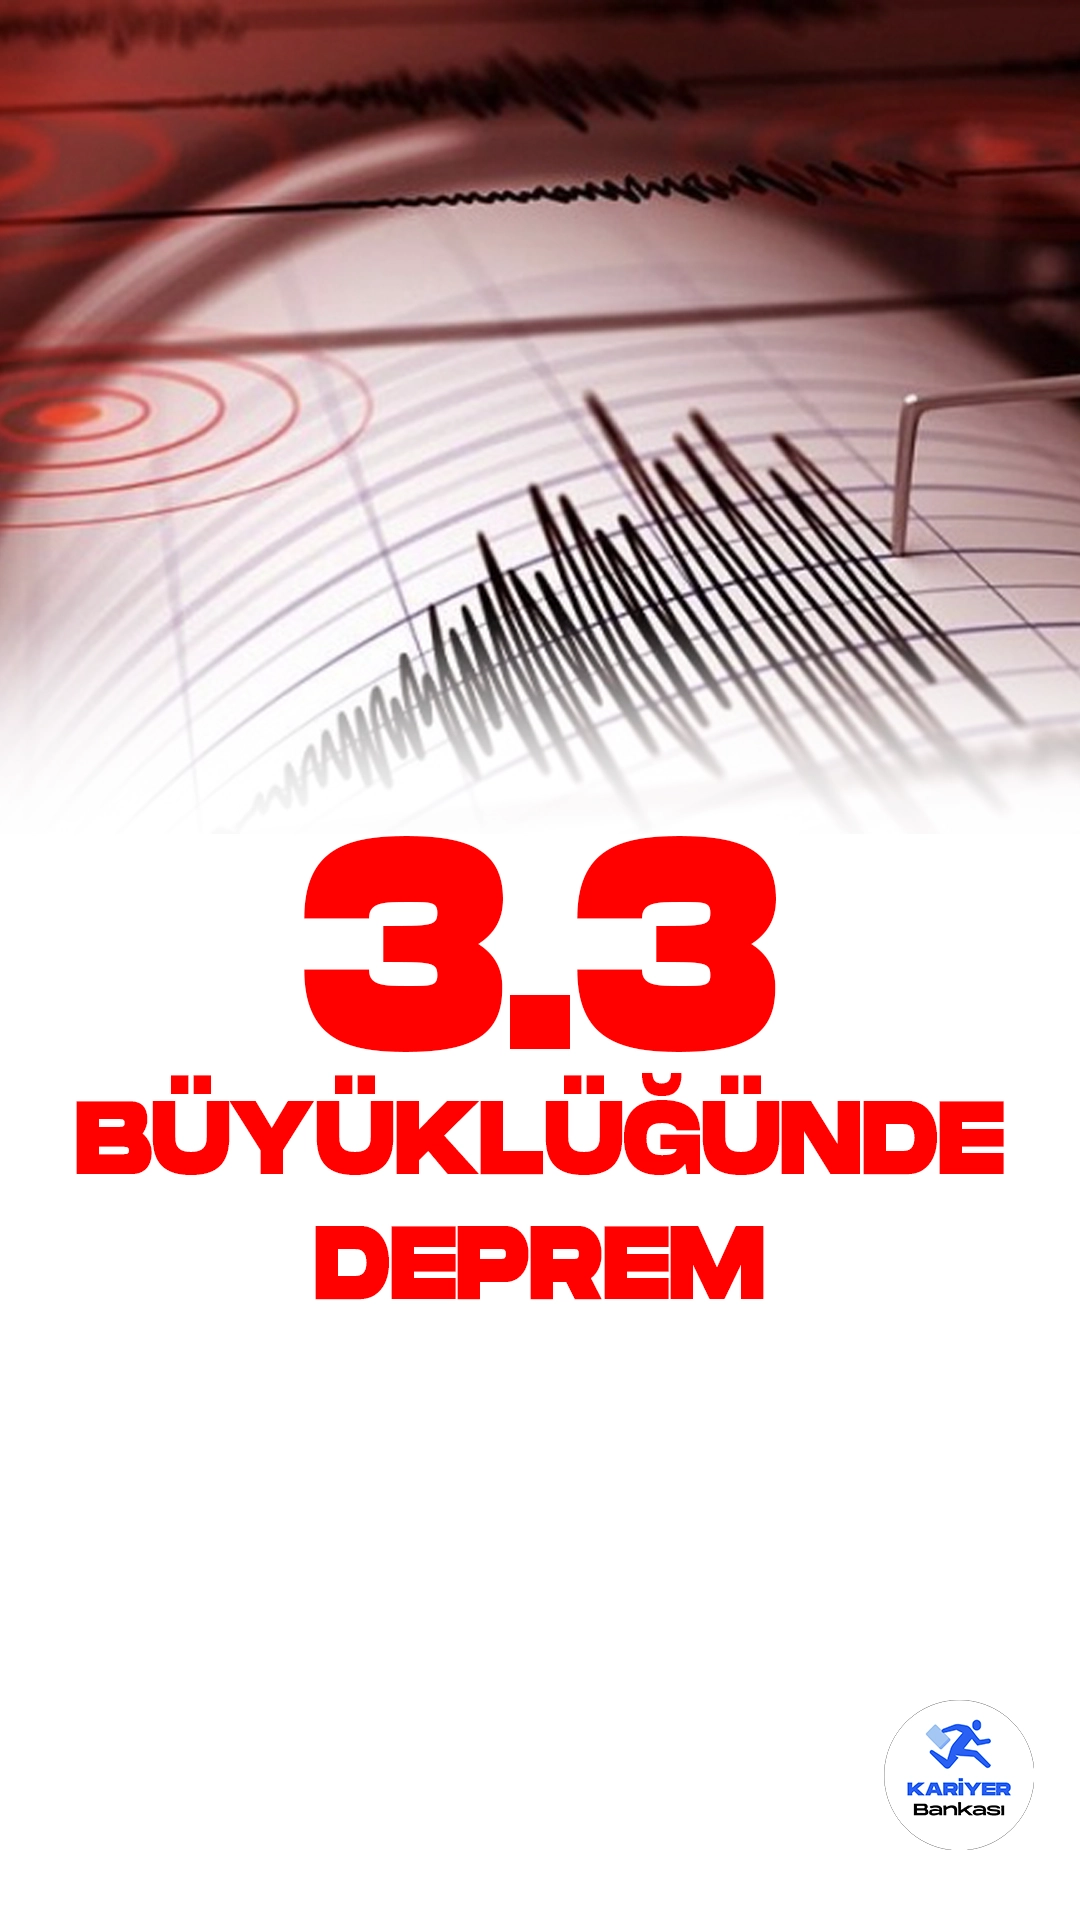 Ardahan'da 3.3 Büyüklüğünde Deprem Oldu. Boğaziçi Üniversitesi Kandilli Rasathanesi ve Deprem Araştırma Enstitüsü resmi sayfasından Ardahan'ın Posof ilçesine bağlı Türkgözü köyünde 3.3 büyüklüğünde deprem meydana geldiği aktarıldı.